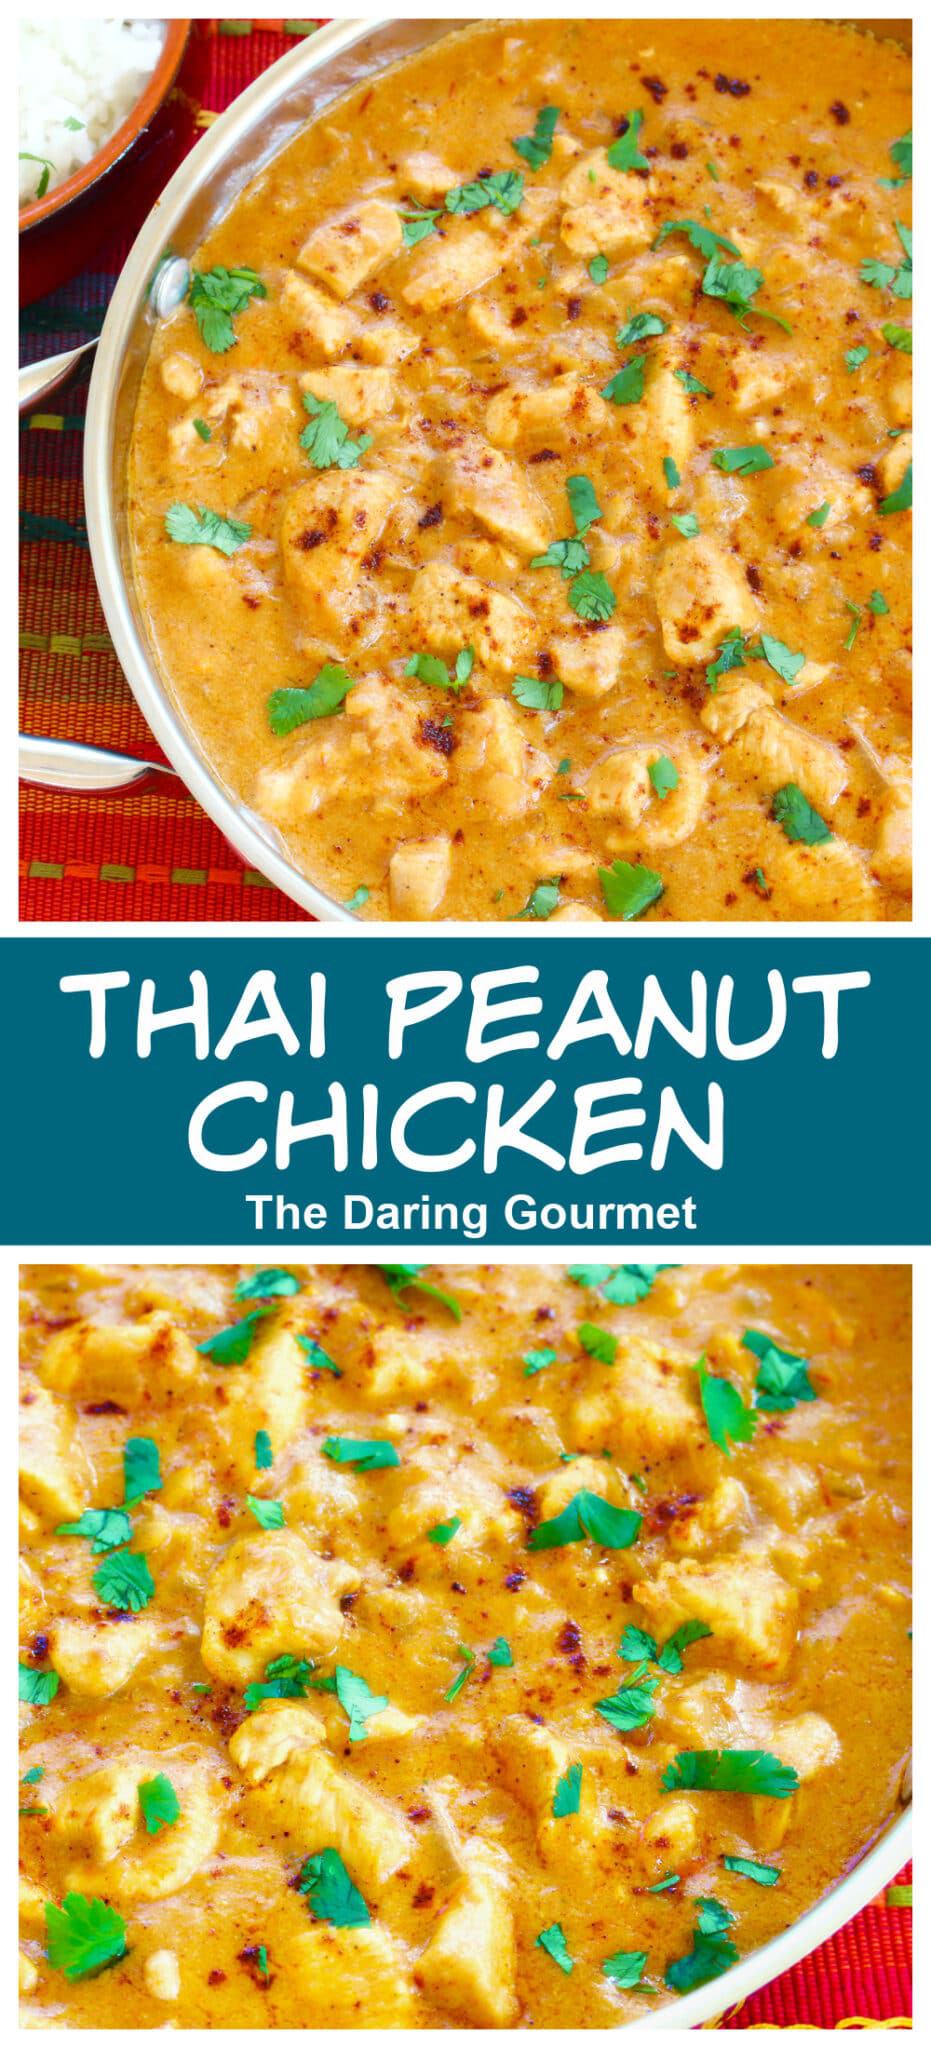 Thai peanut chicken recipe coconut milk Asian mild sweet cilantro spicy